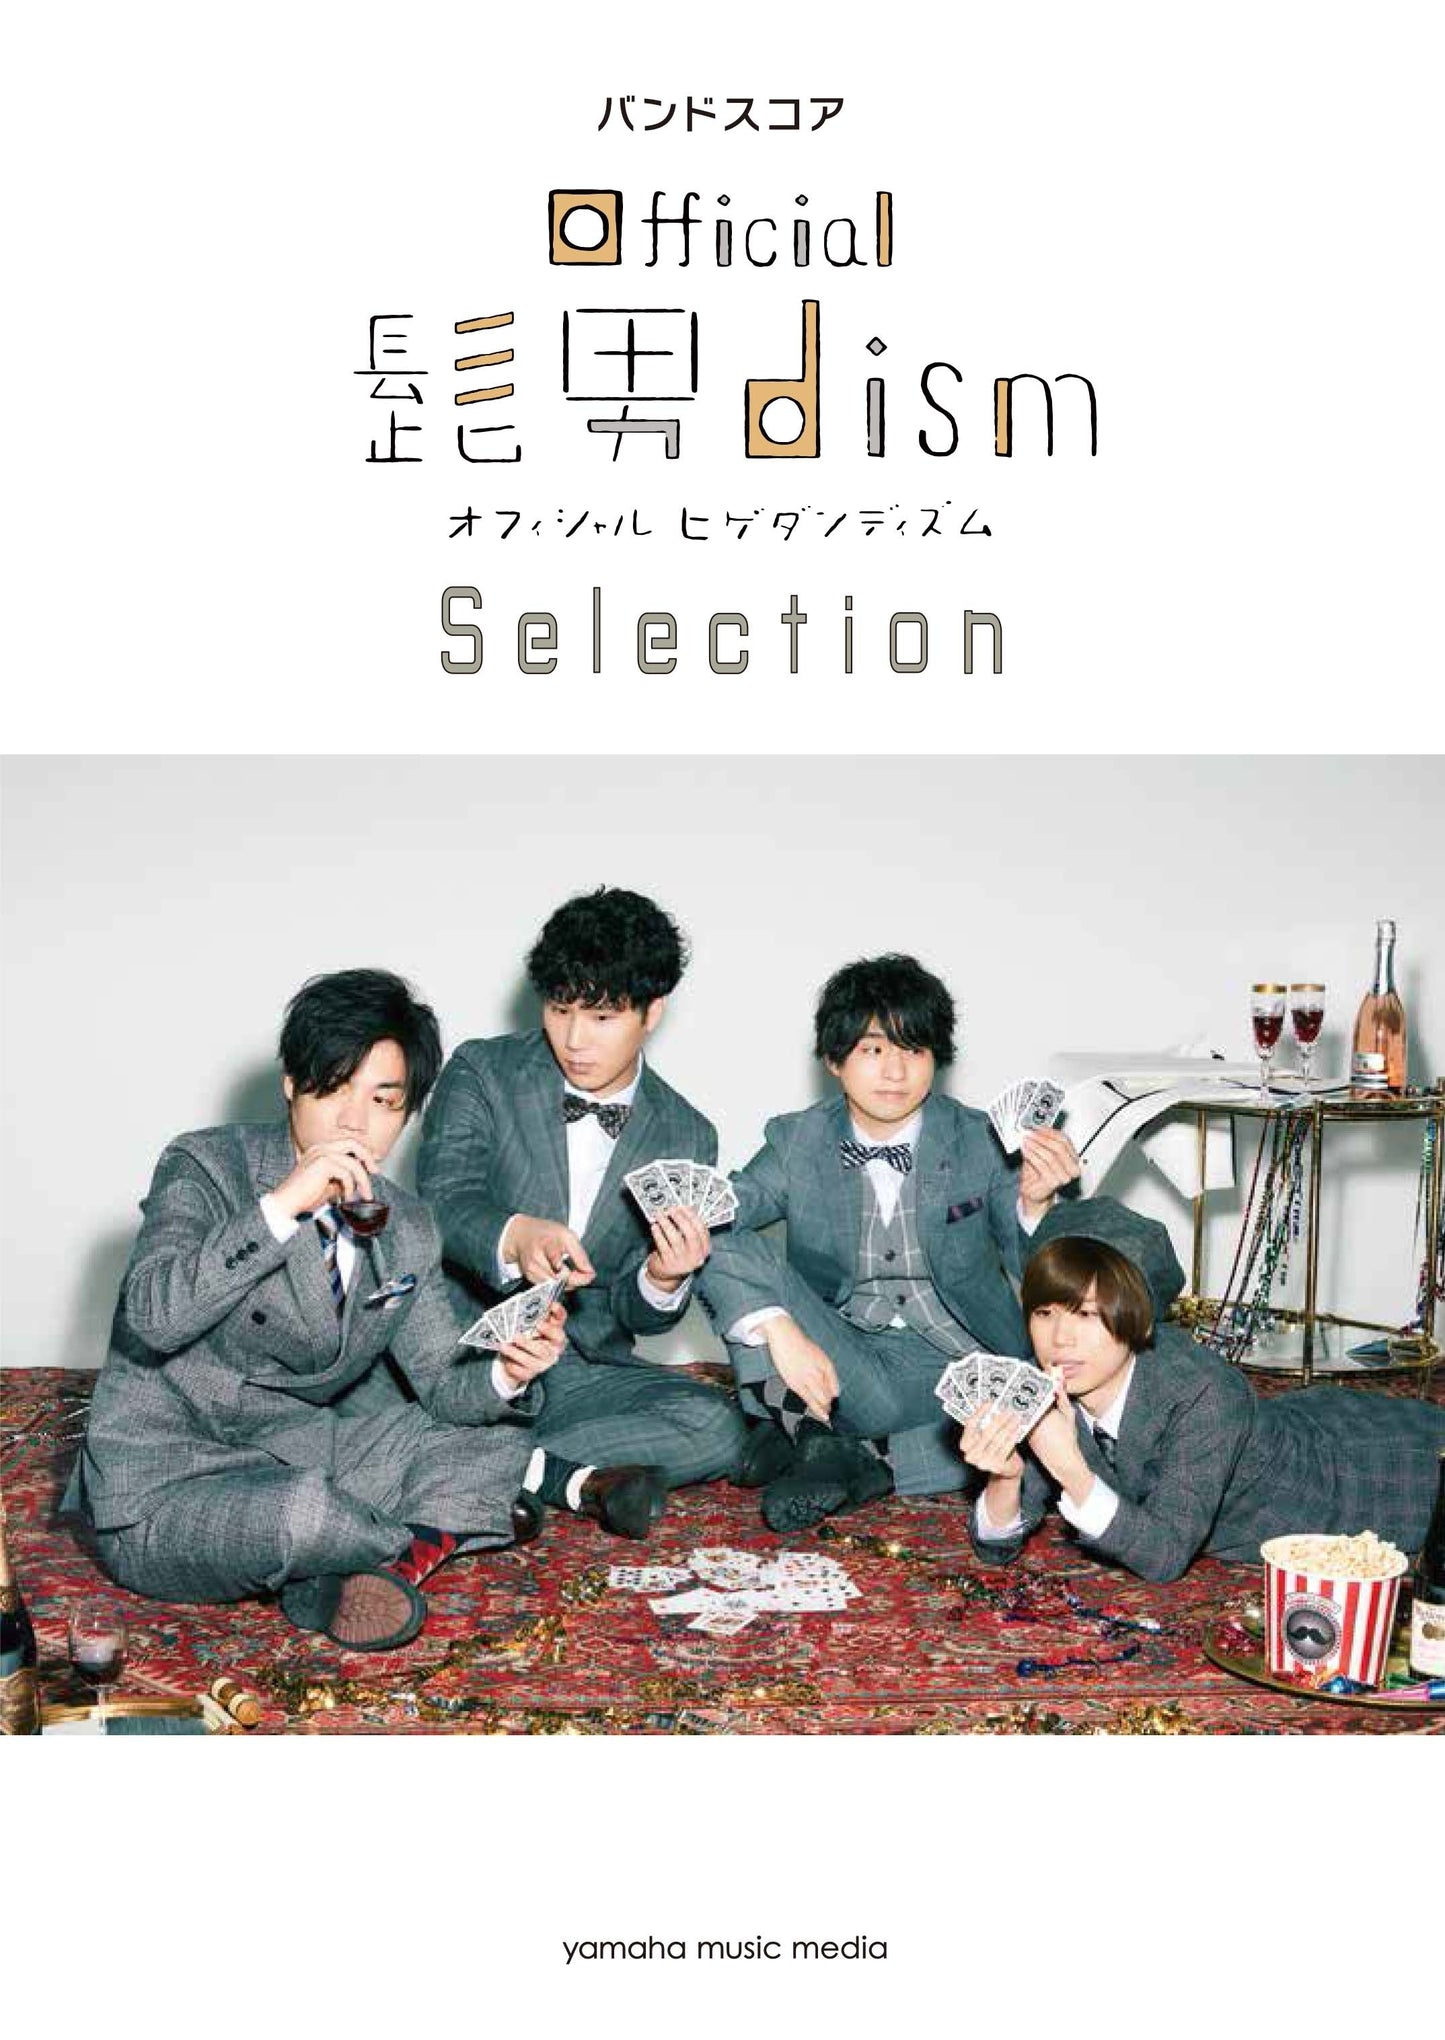 バンドスコア Official髭男dism Selection